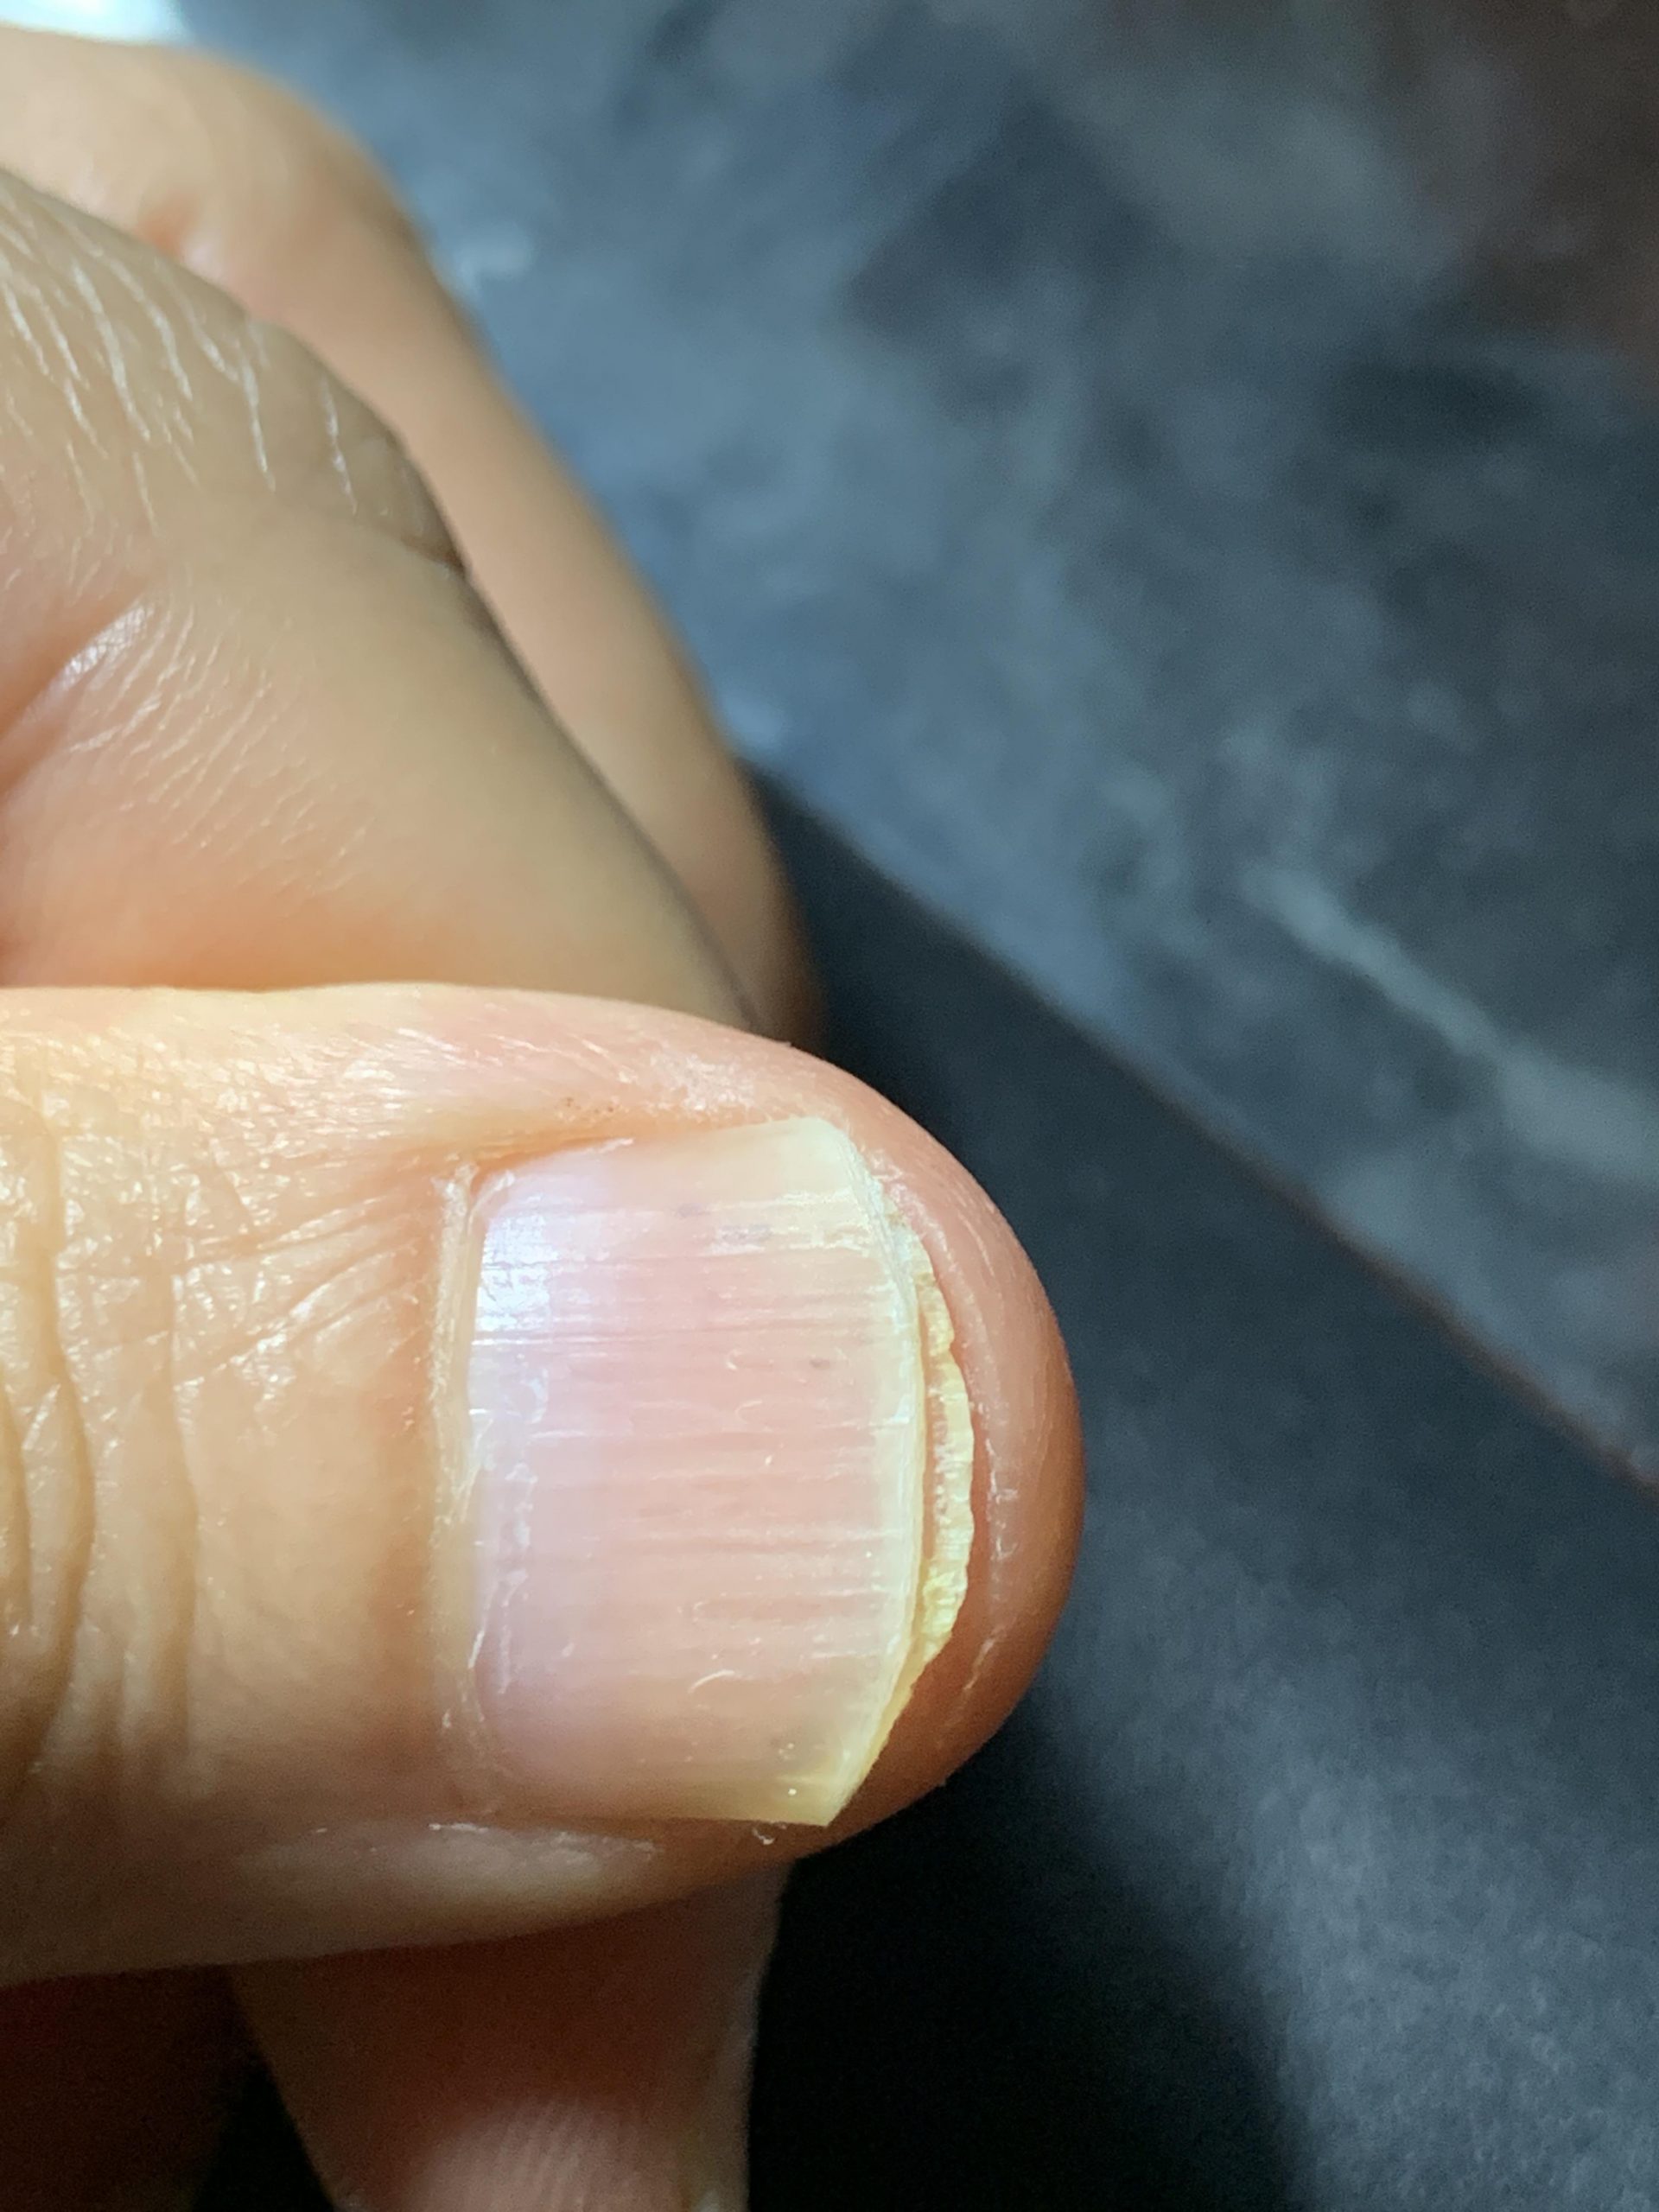 Is this nail fungus? : NailFungus